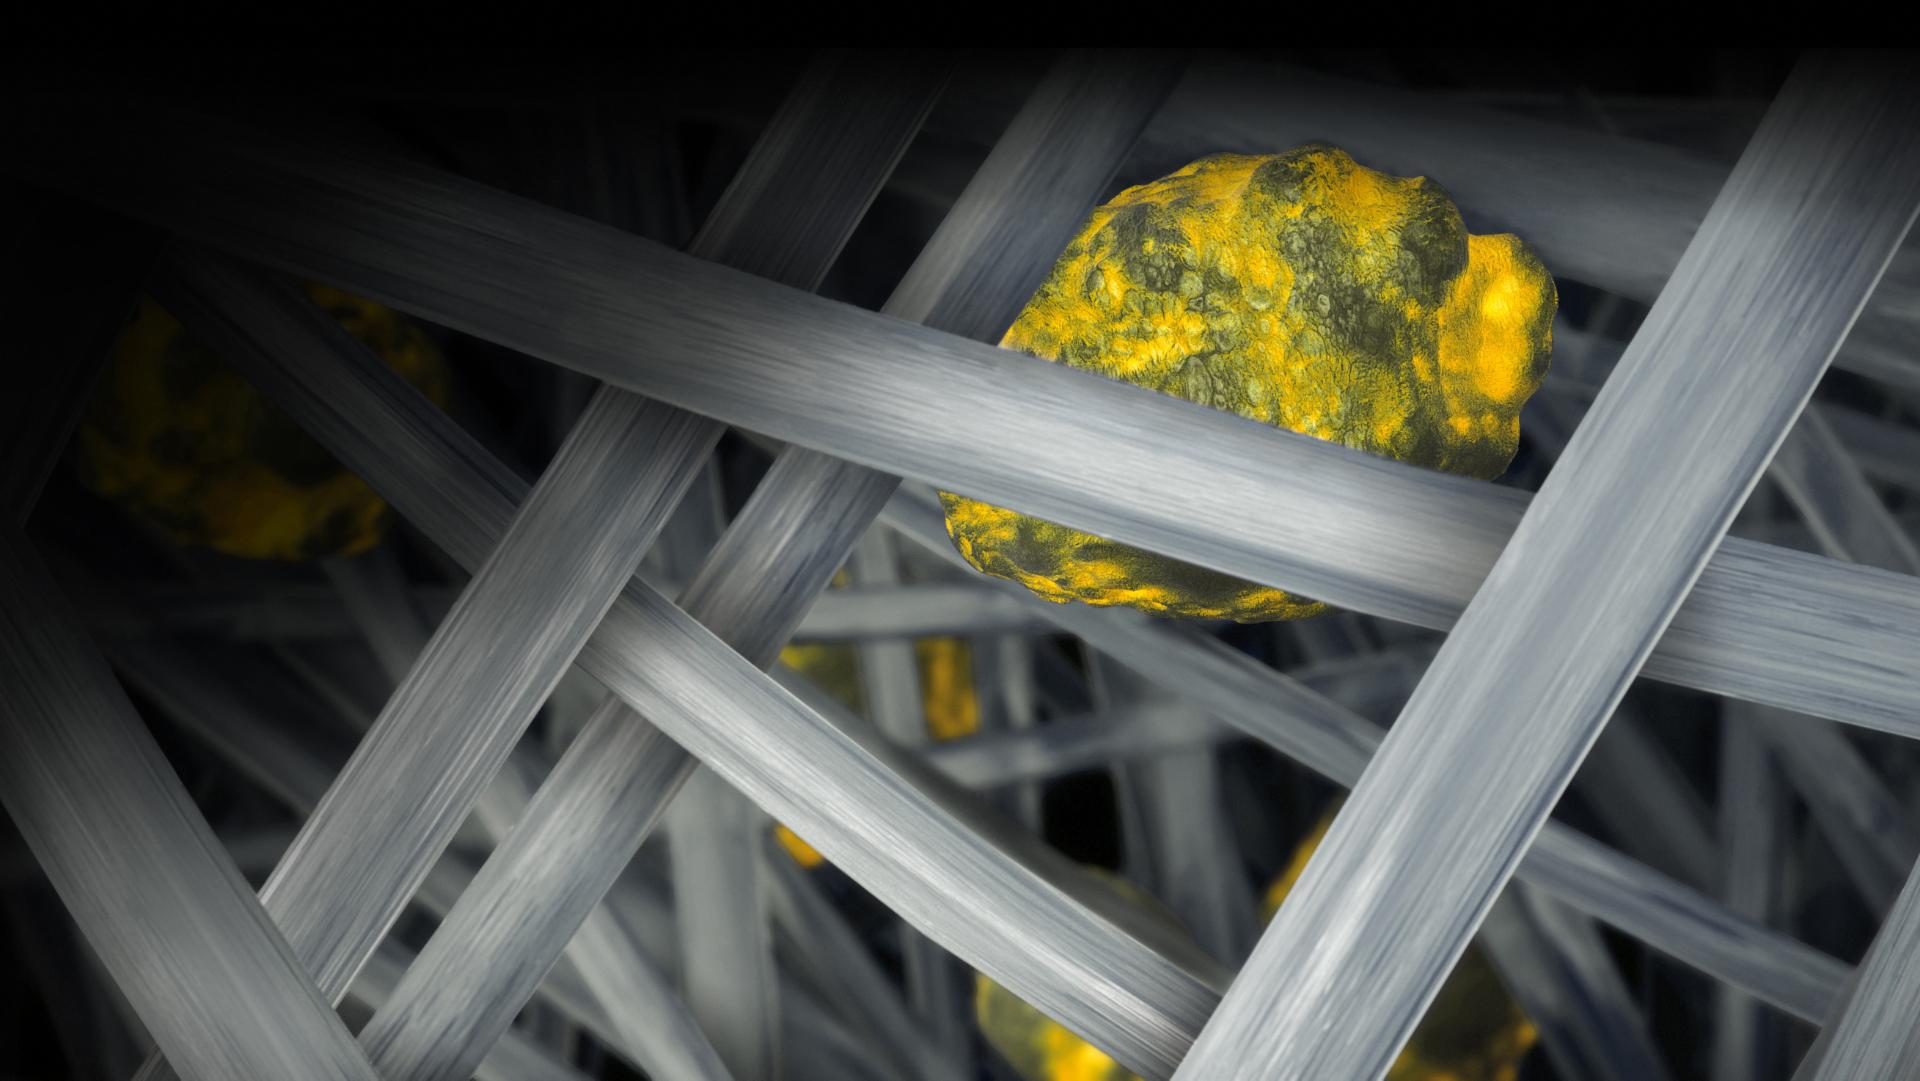 Közeli kép a Dyson vezeték nélküli porszívó szűrőegységéről